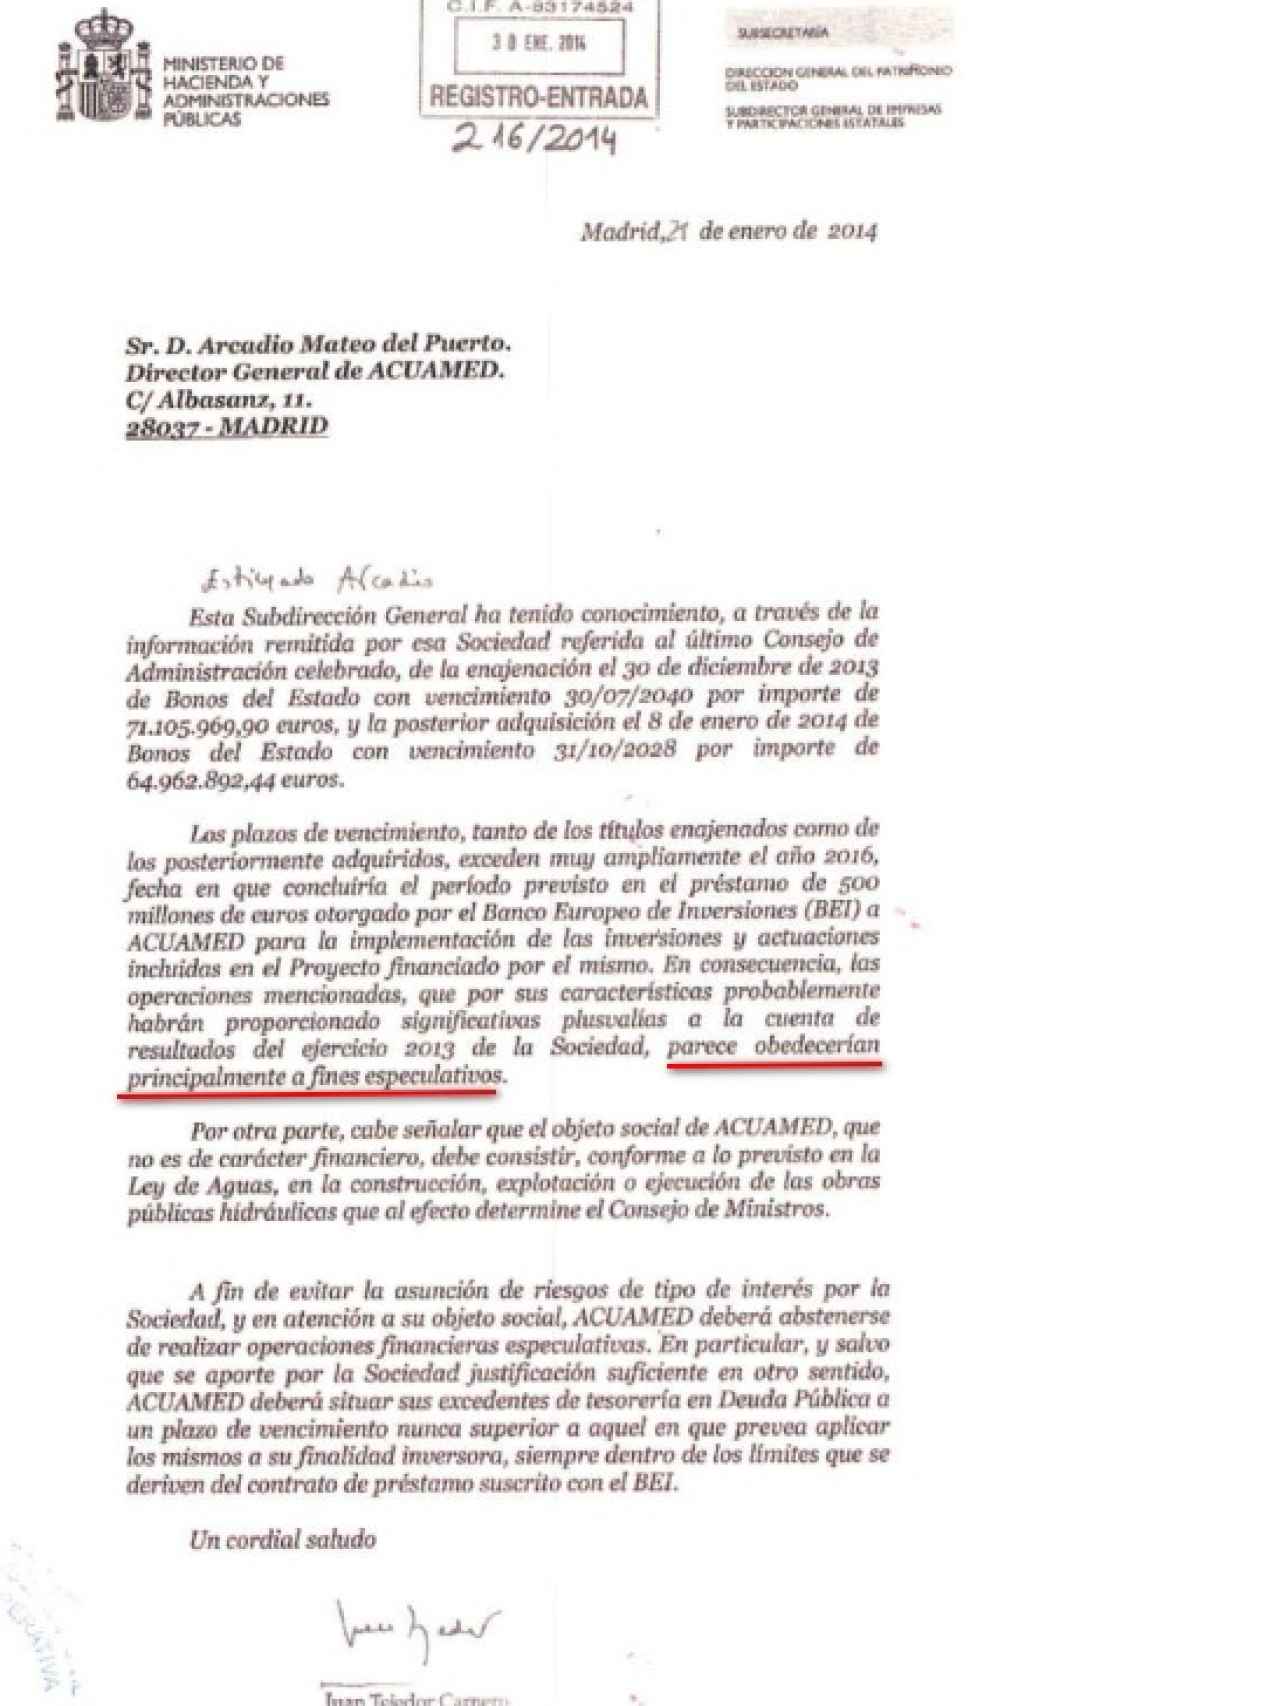 Carta remitida a Acuamed por parte de Hacienda.